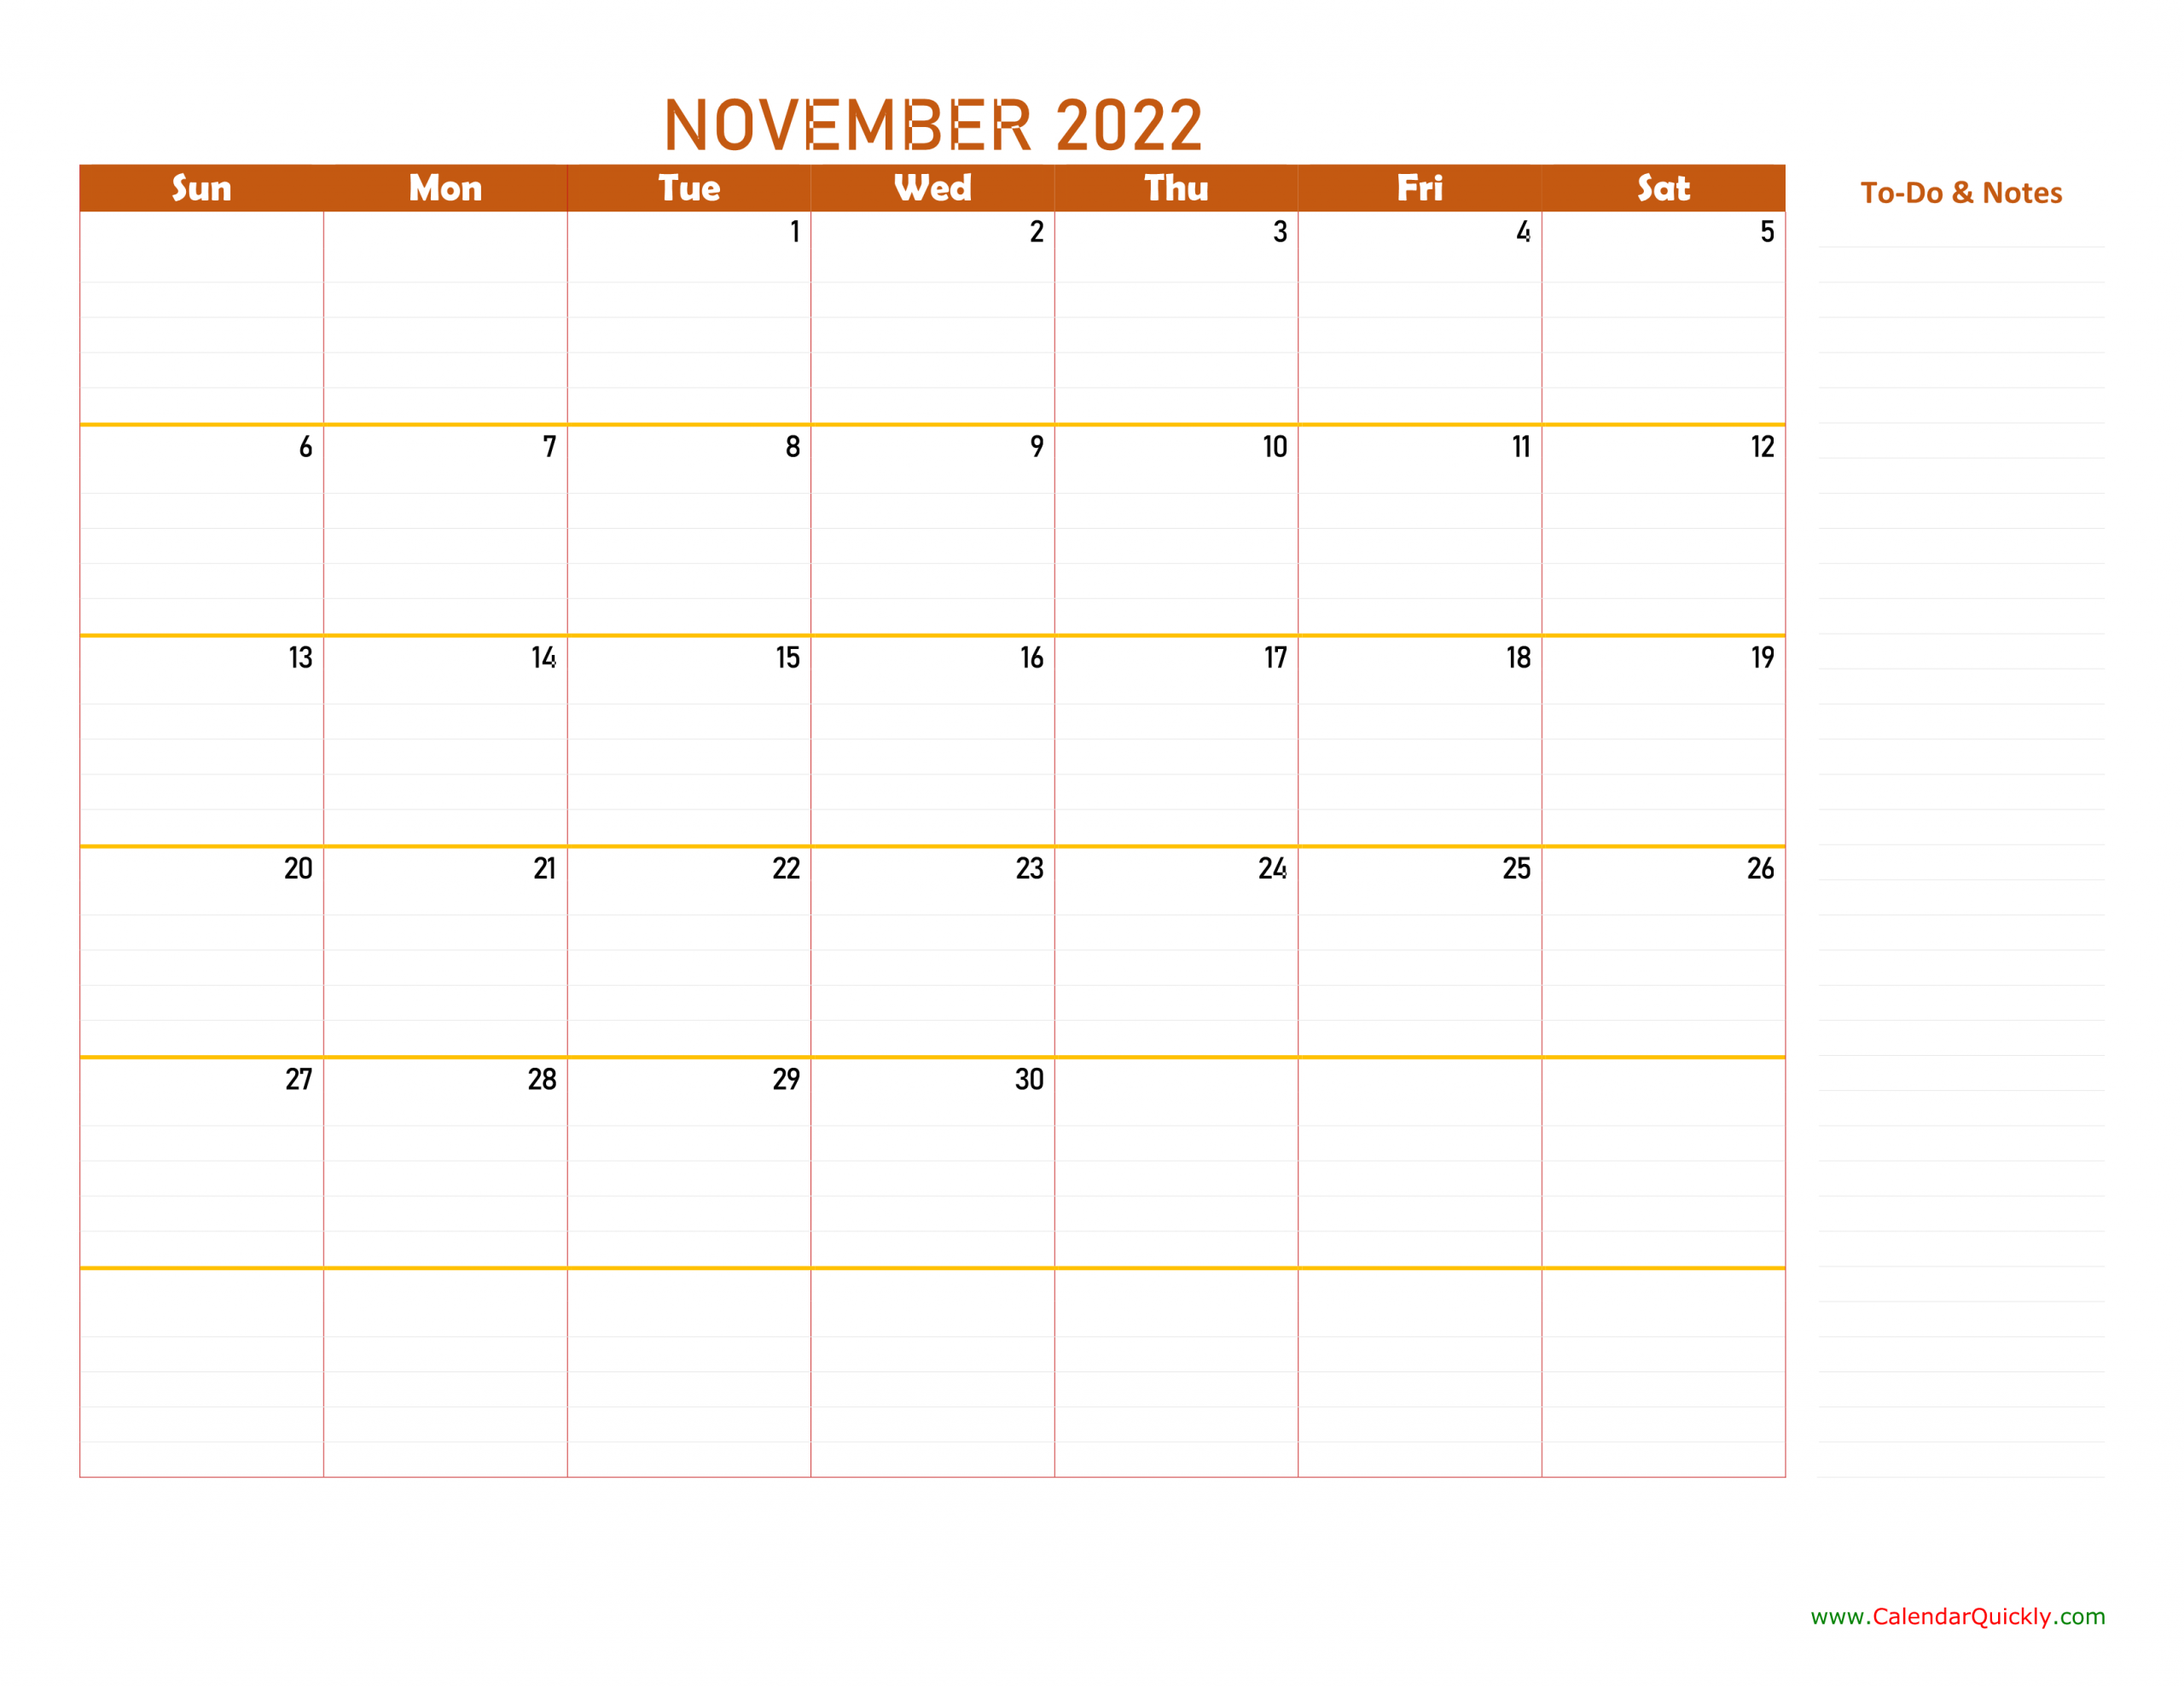 November 2022 Calendar | Calendar Quickly